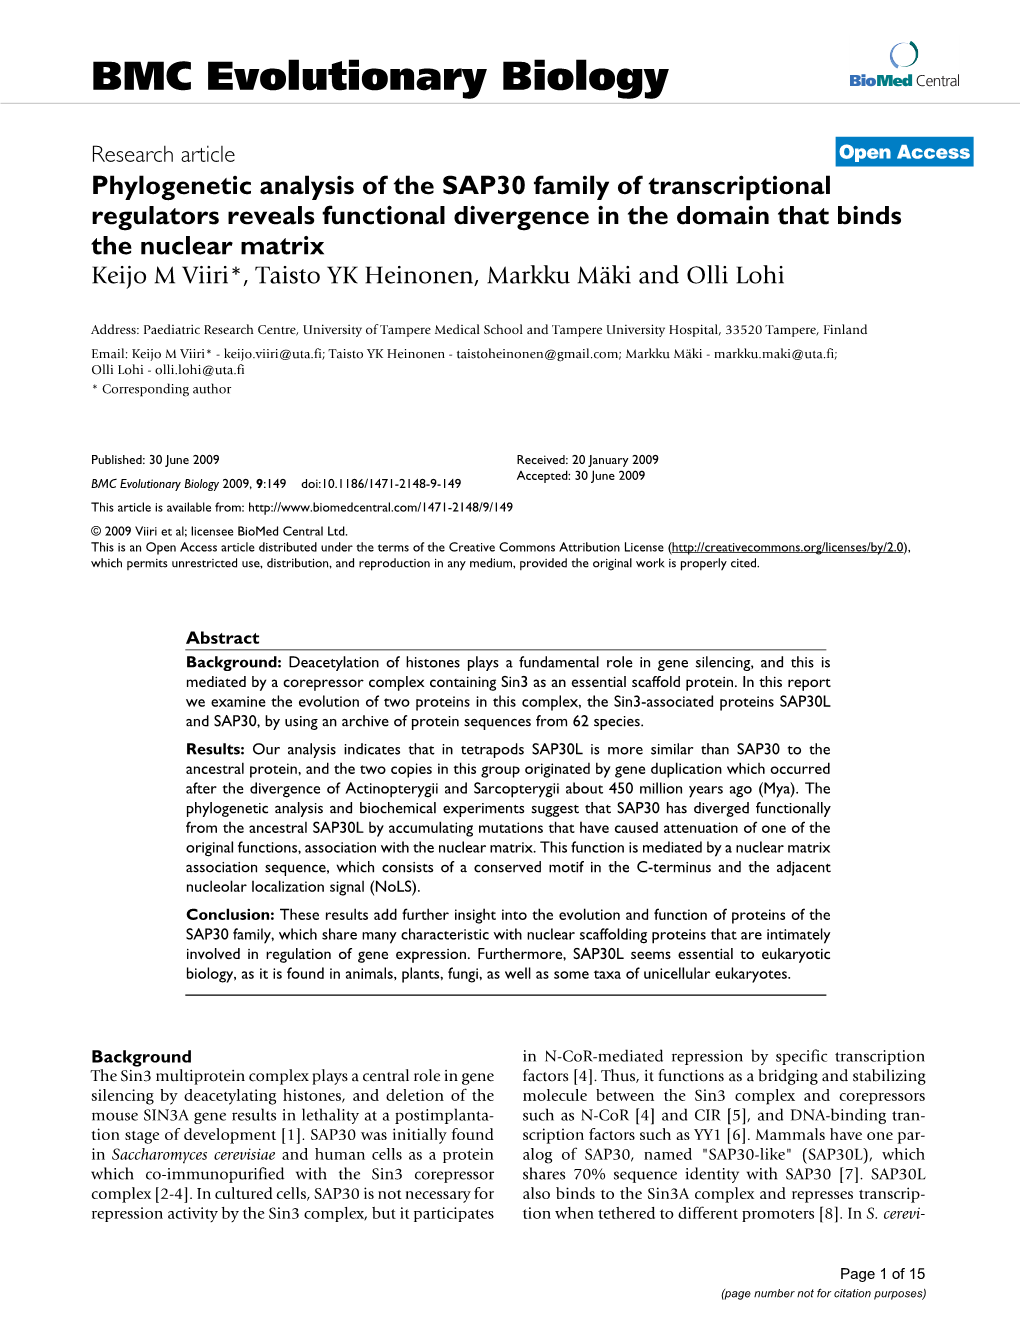 Phylogenetic Analysis of the SAP30 Family of Transcriptional Regulators